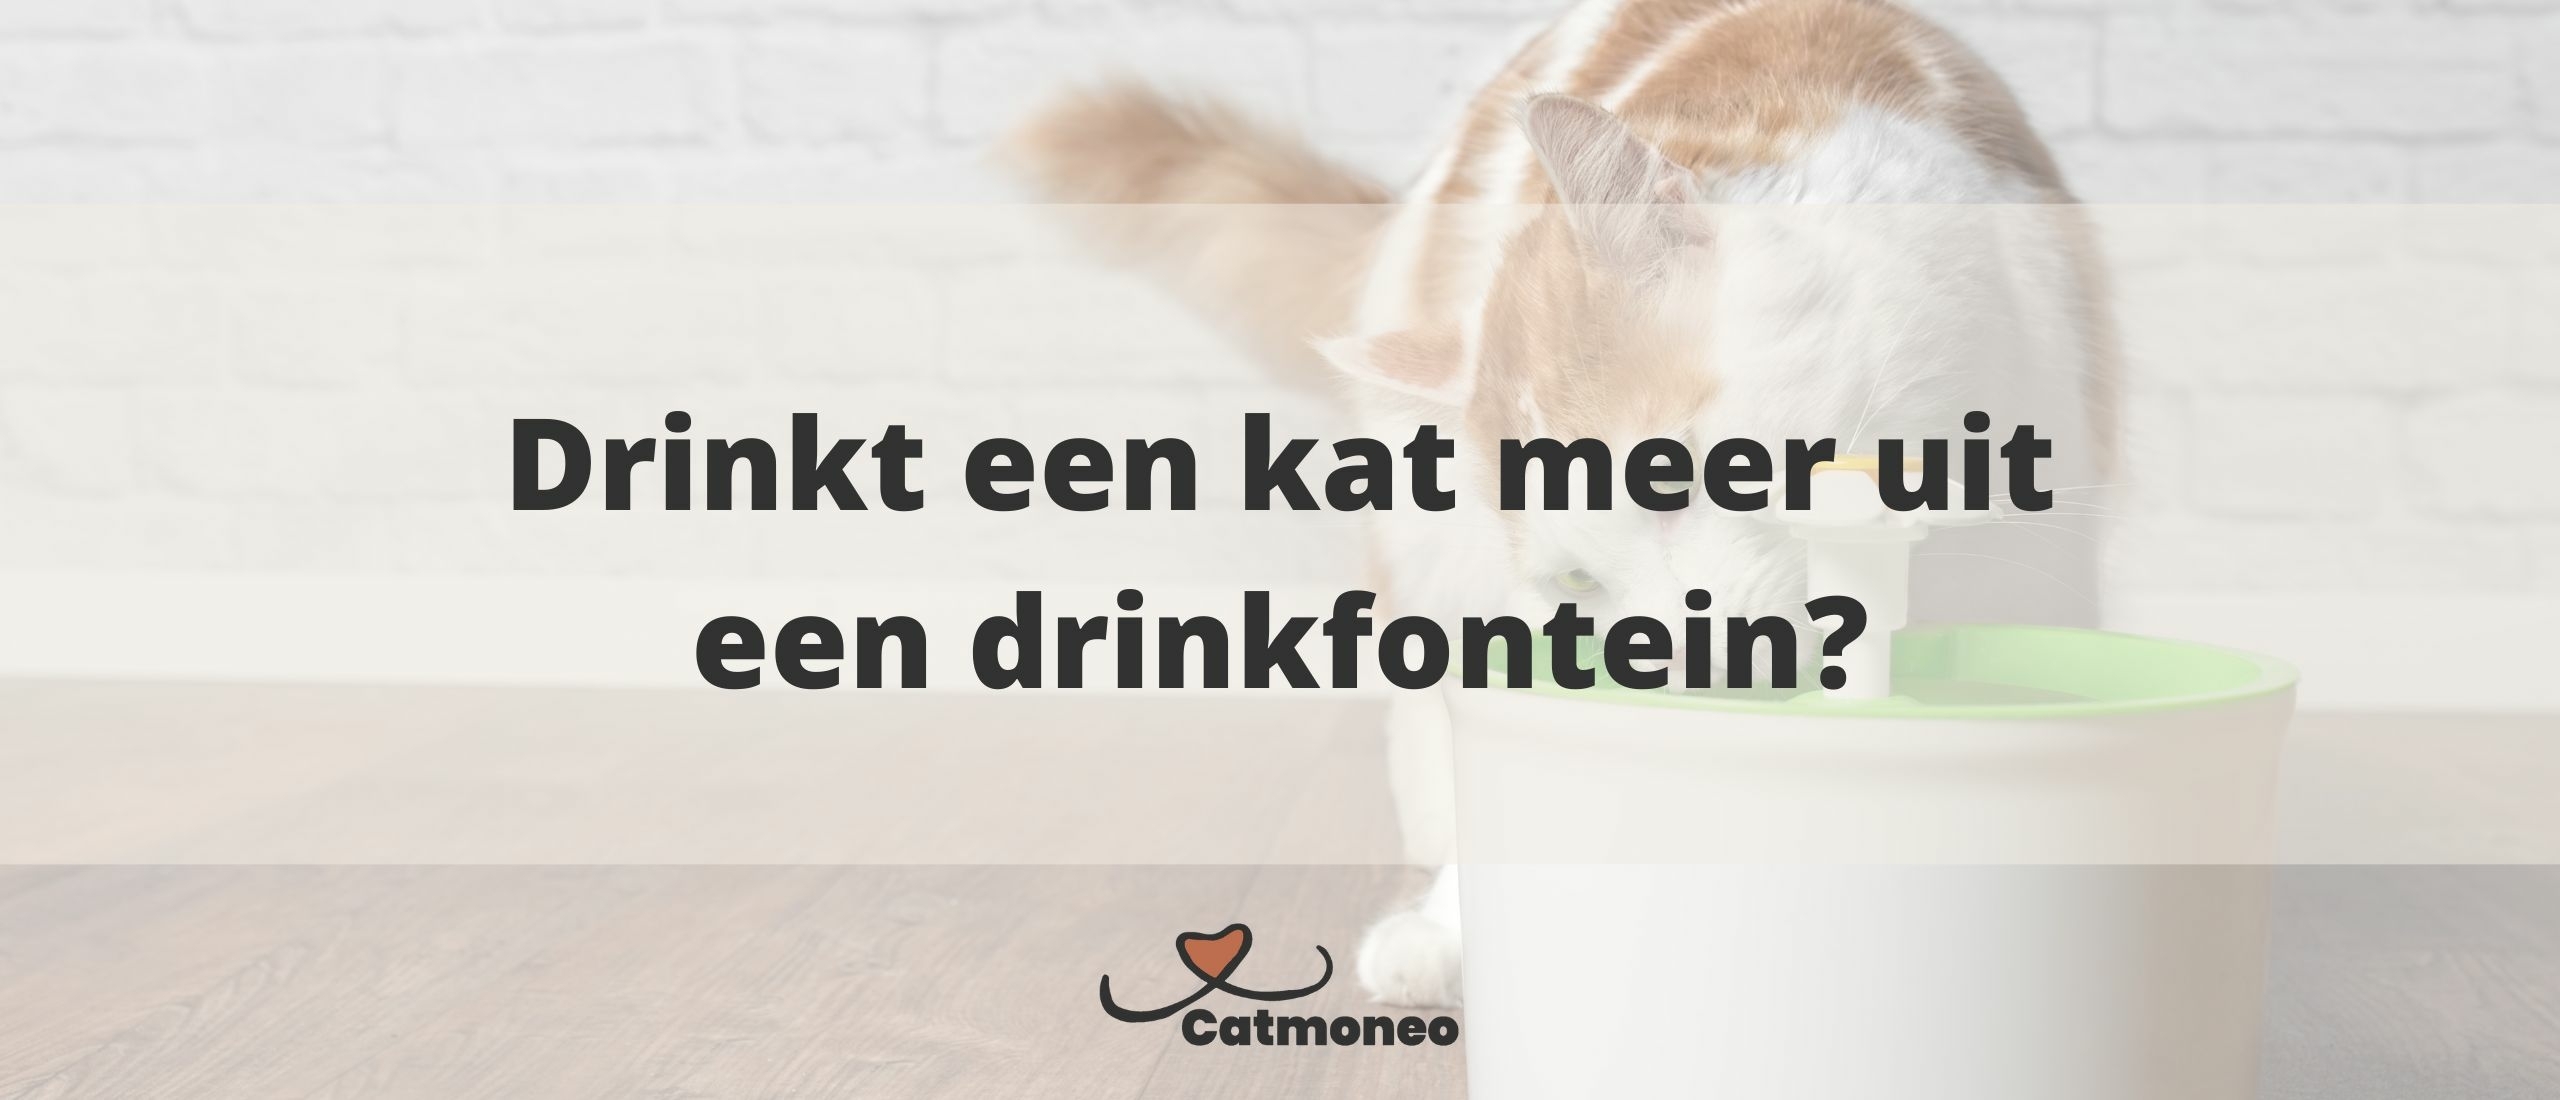 Drinken katten meer uit een waterfontein?